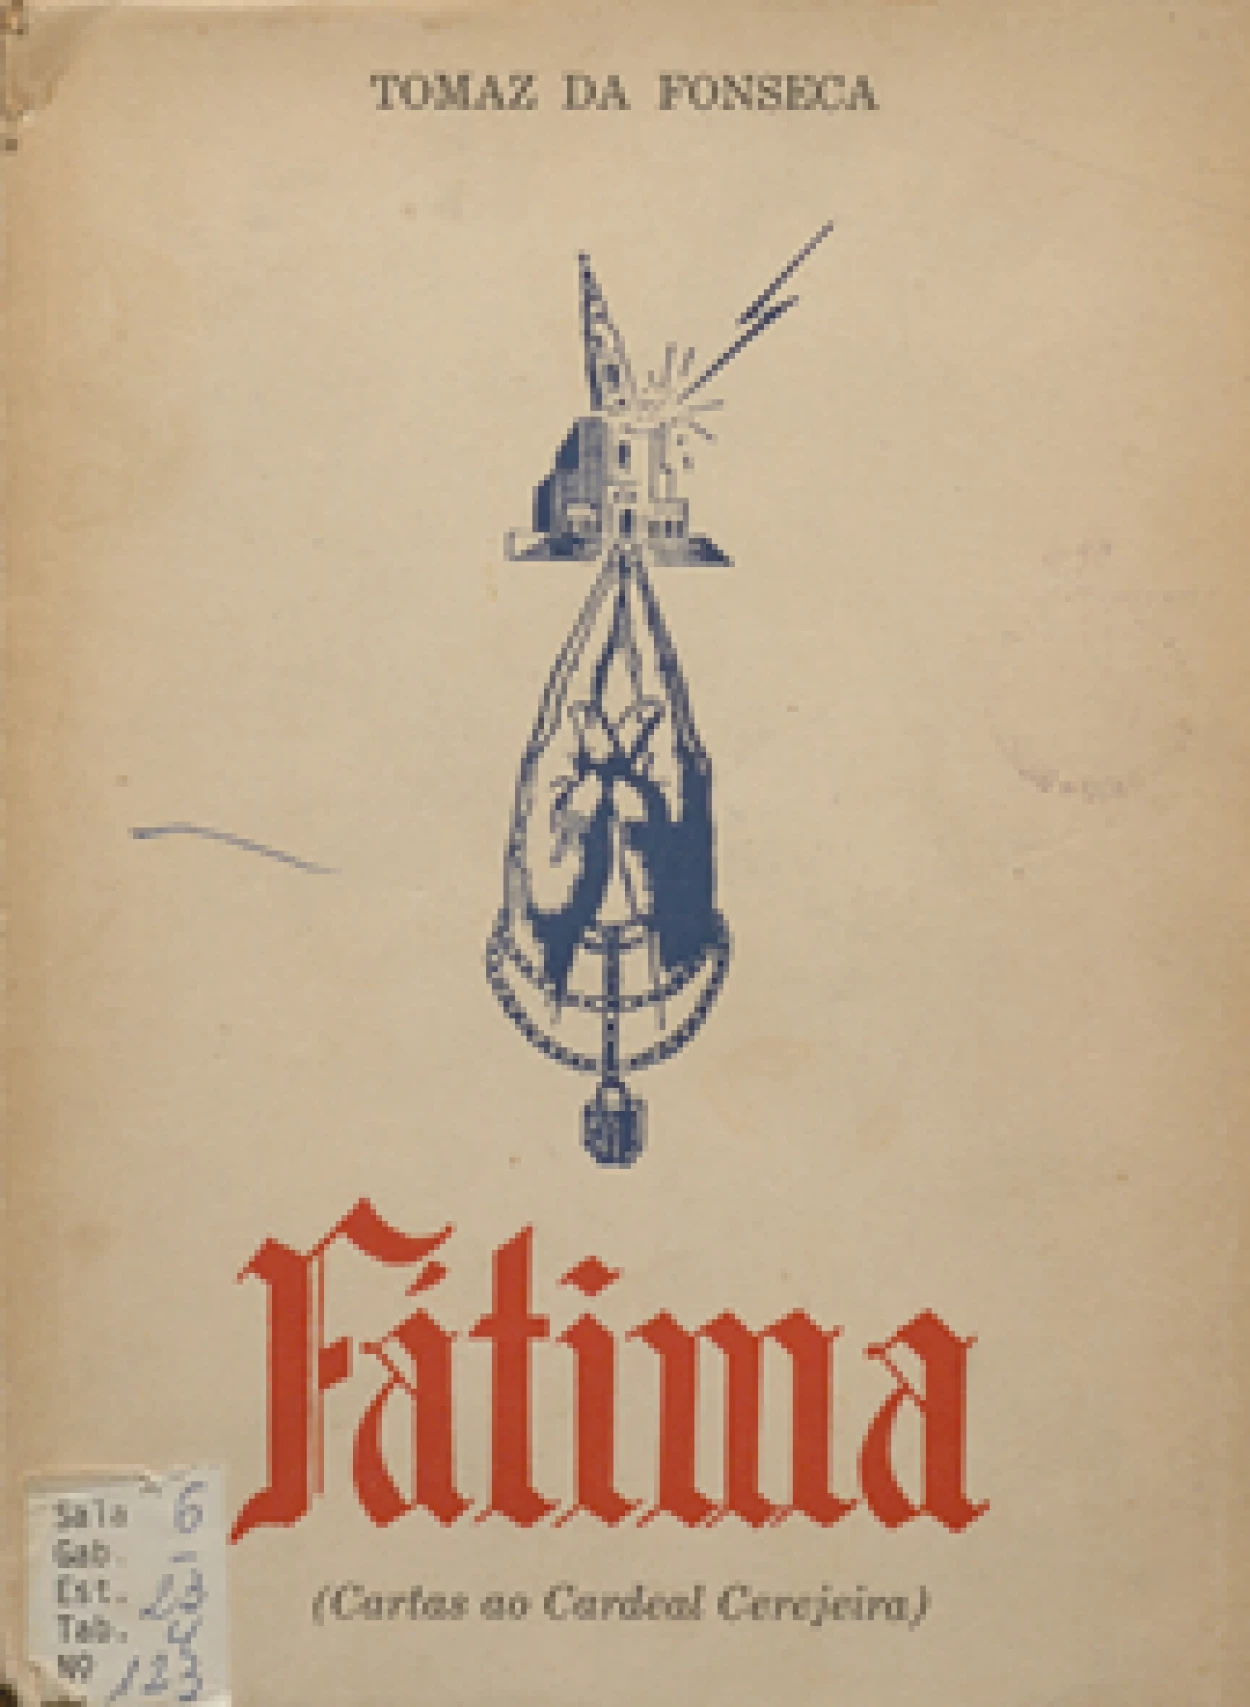 Tomás da Fonseca, 1877–1968
Fátima : cartas ao Cardeal Patriarca de Lisboa.
Rio de Janeiro : Editorial Germinal, imp.1955.